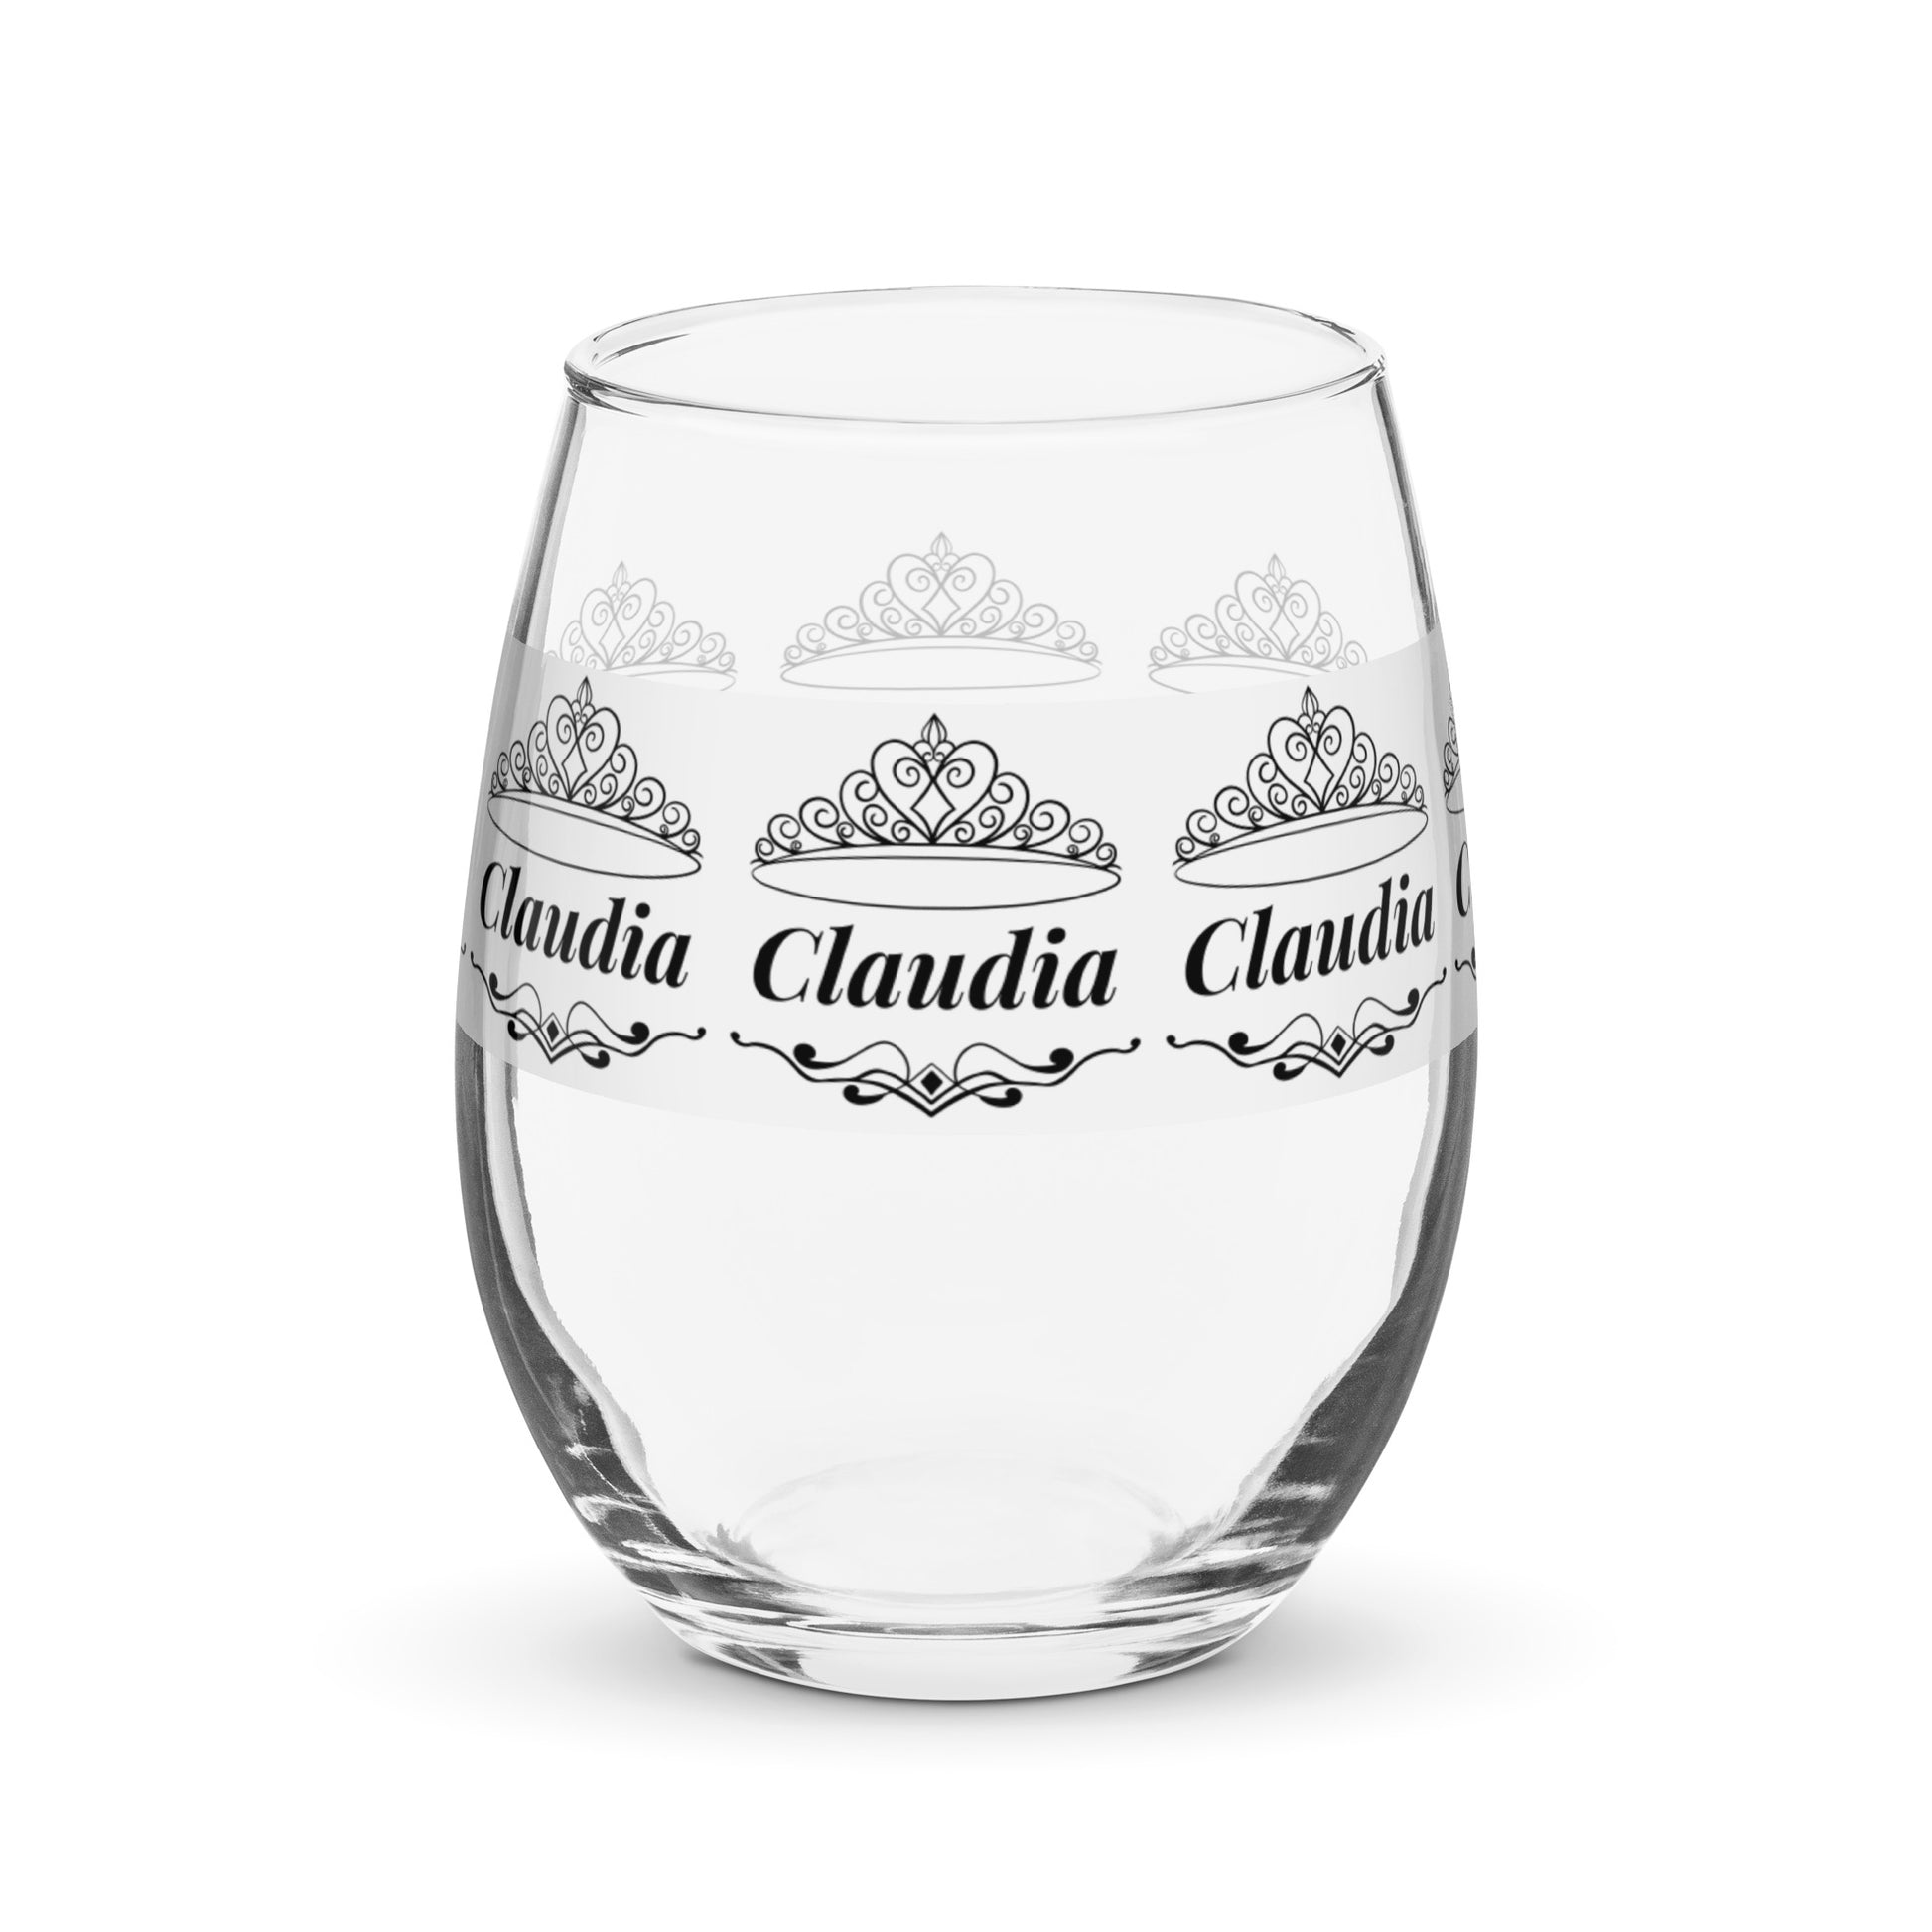 Claudia nombre copa de vino copa de vino personalizada copa de vino